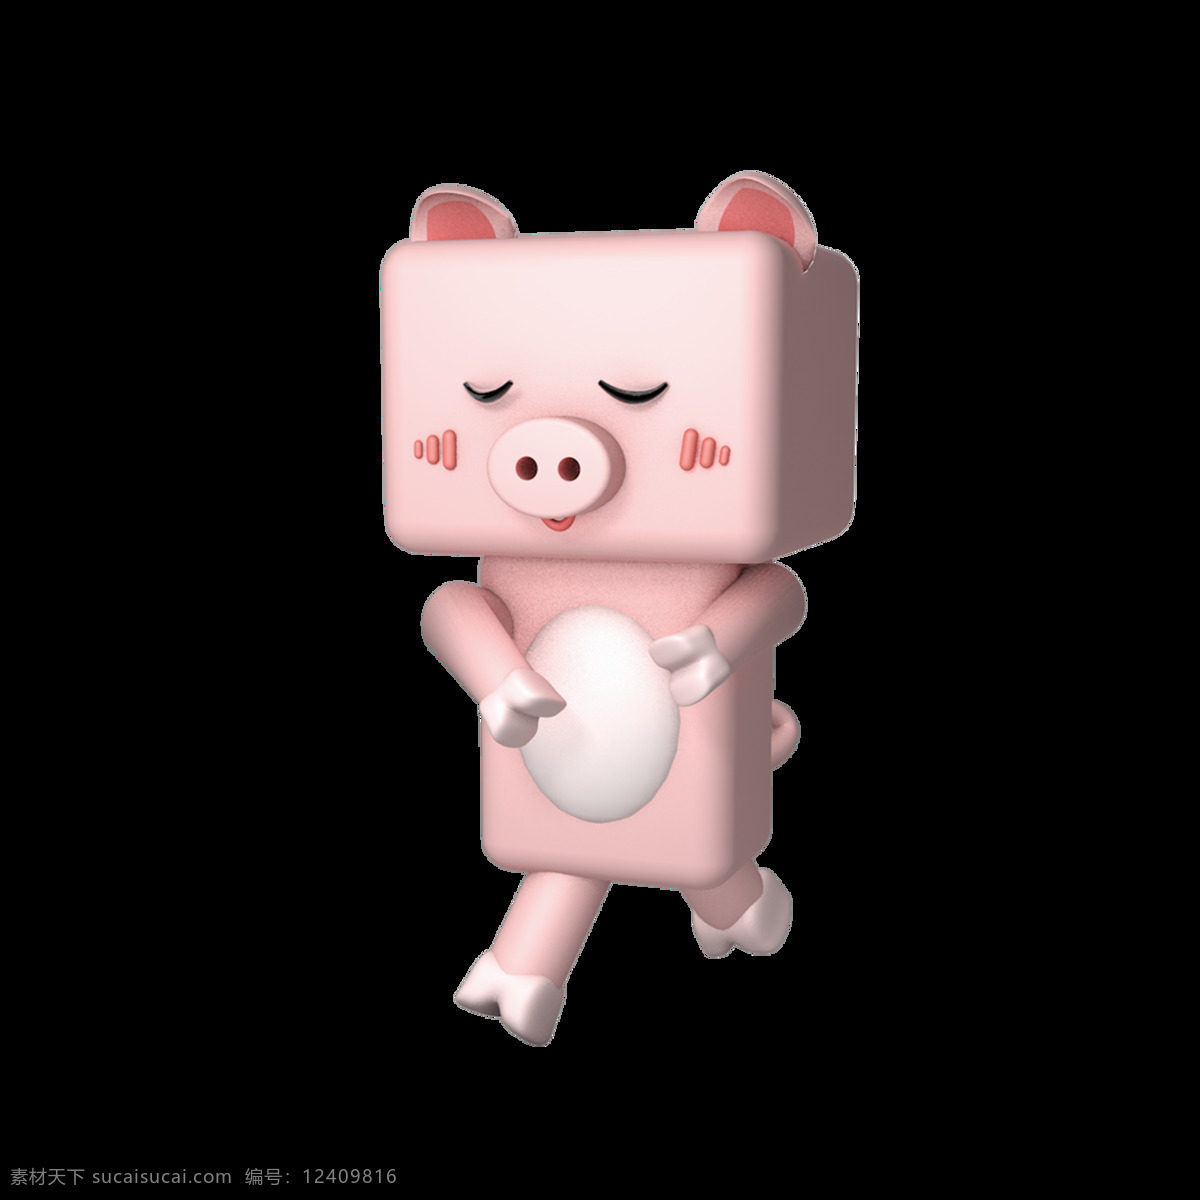 2019 生肖 猪 猪年 粉 卡通 人物 商用 元素 节日 春节 动物 过年 新年 粉嫩 q版 c4d 手绘 公仔